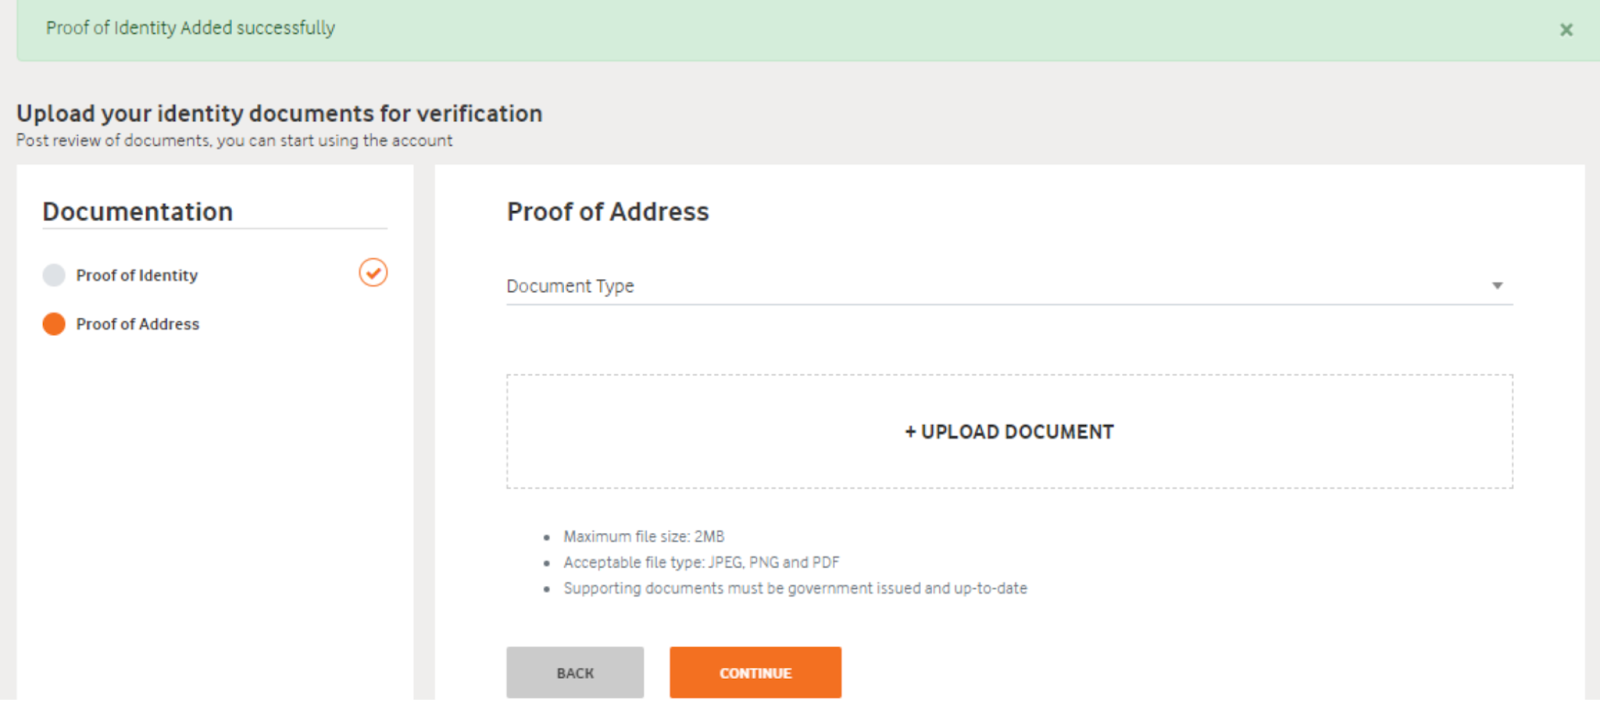 Proof of address upload on Vodafone DLT portal